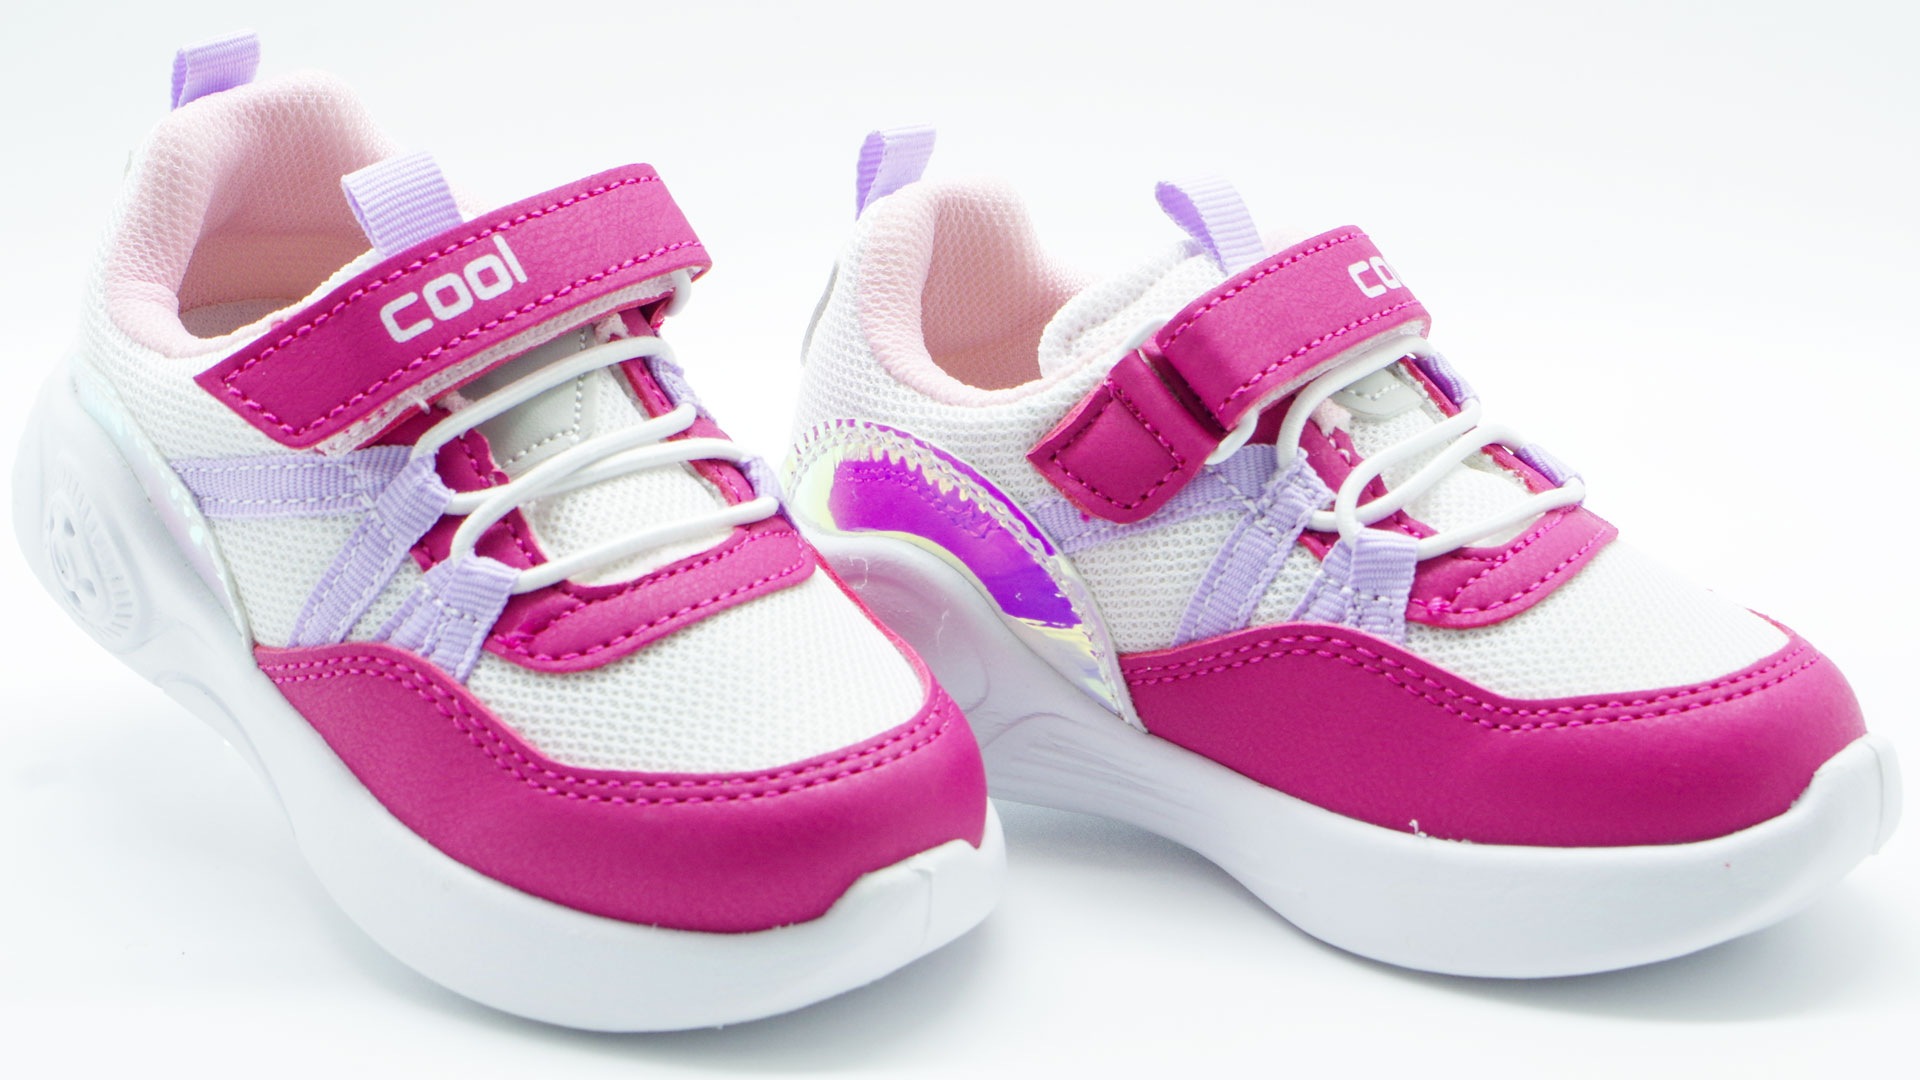 Led Кросівки для дівчат (2198) для дівчинки, матеріал Текстиль, Рожевий колір, 22-26 розміри – Sole Kids. Фото 2